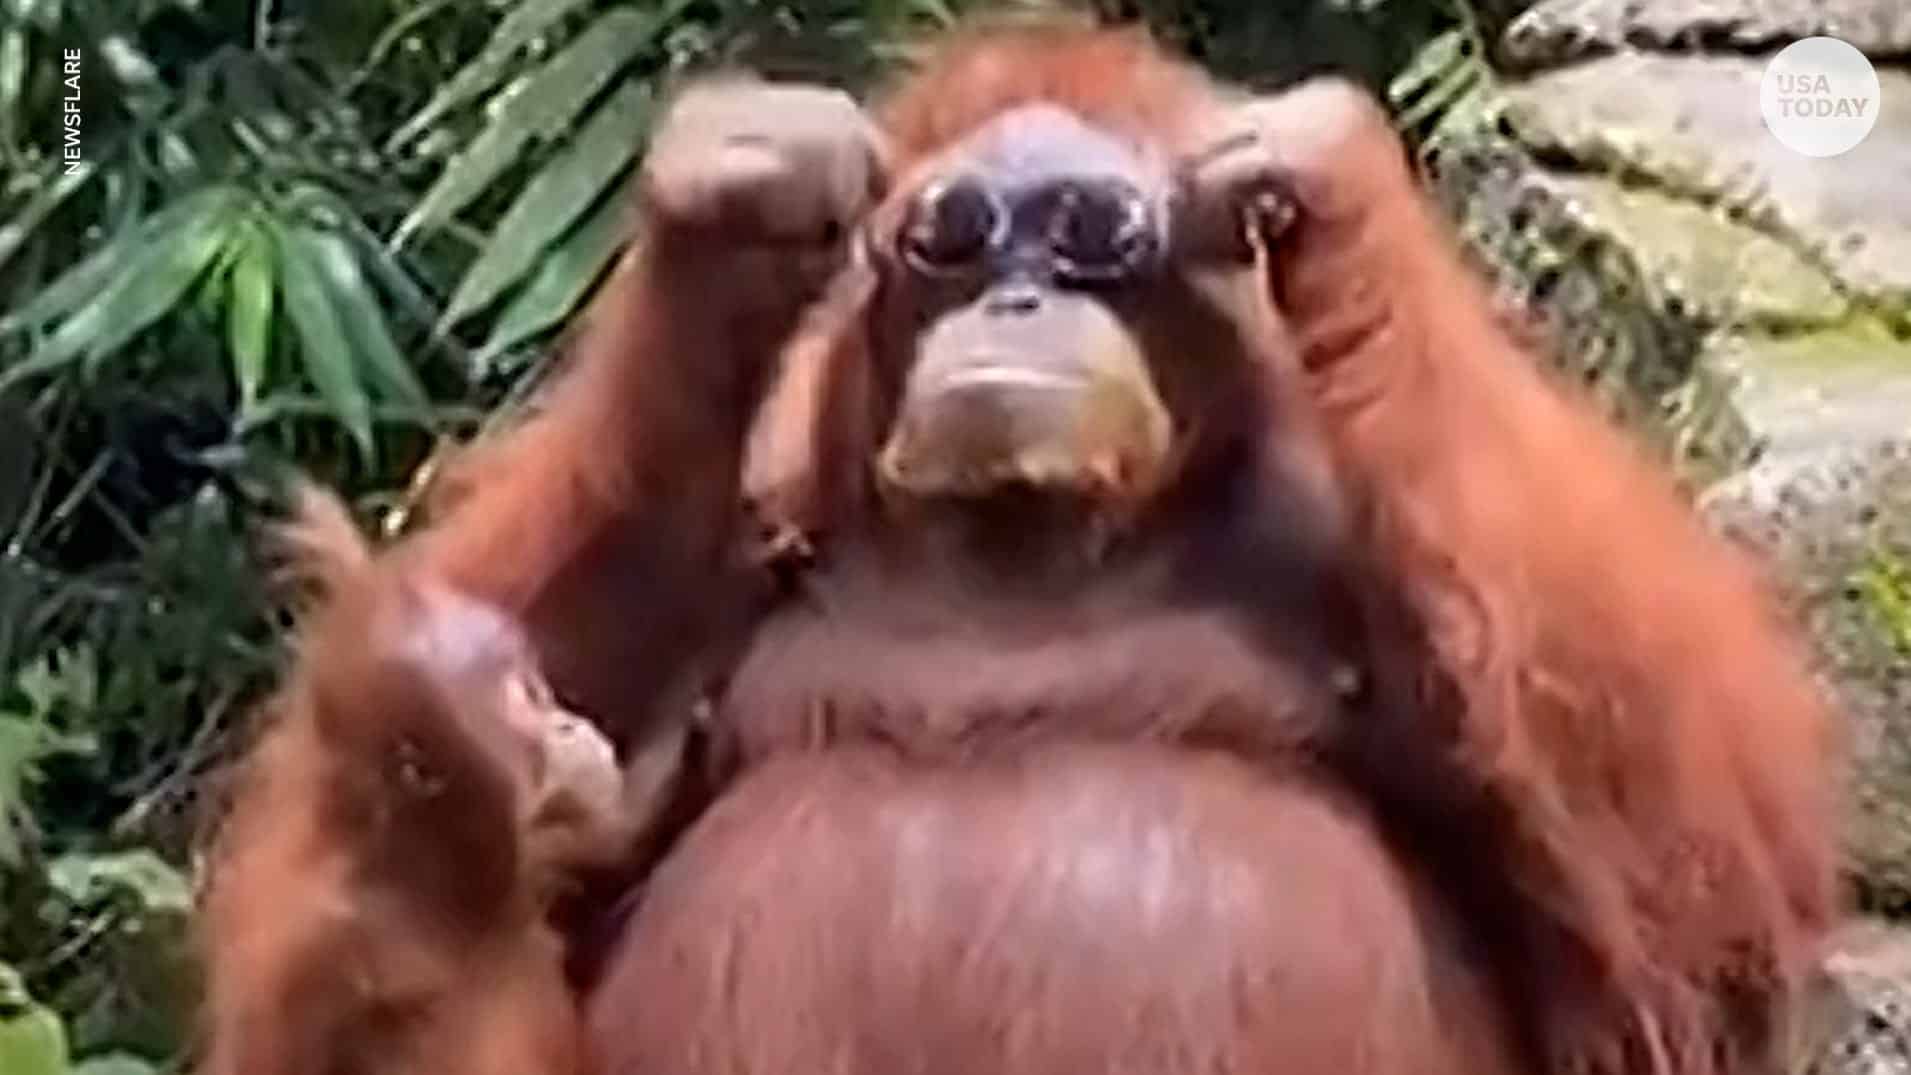 orangutan wears shades